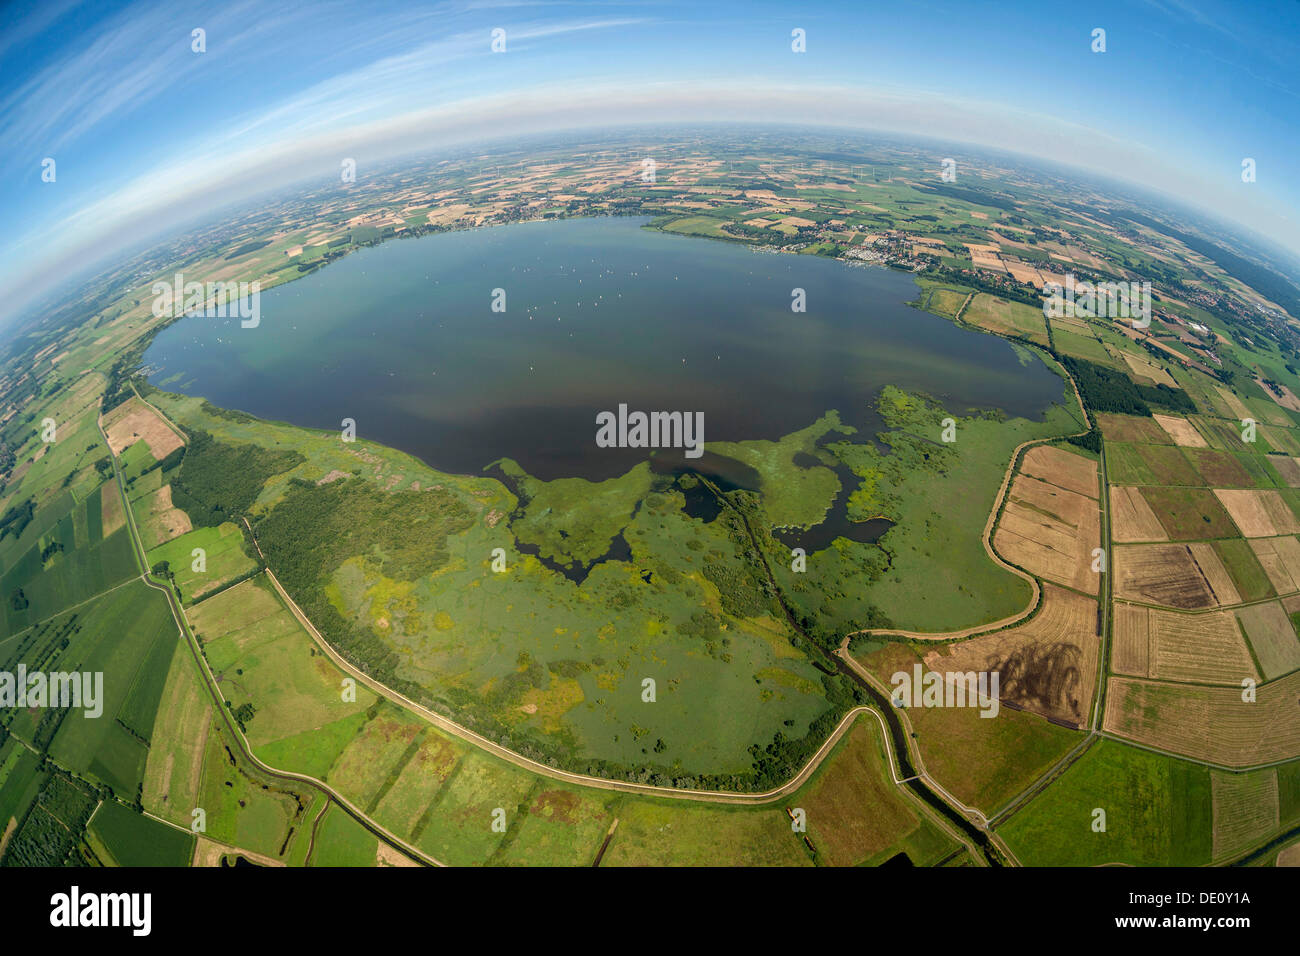 Vue aérienne, plan, fisheye et Duemmersee Duemmer River lake, Nord de l'Allemagne du Nord, Plaine plaine ou Hunte, Handorf Banque D'Images